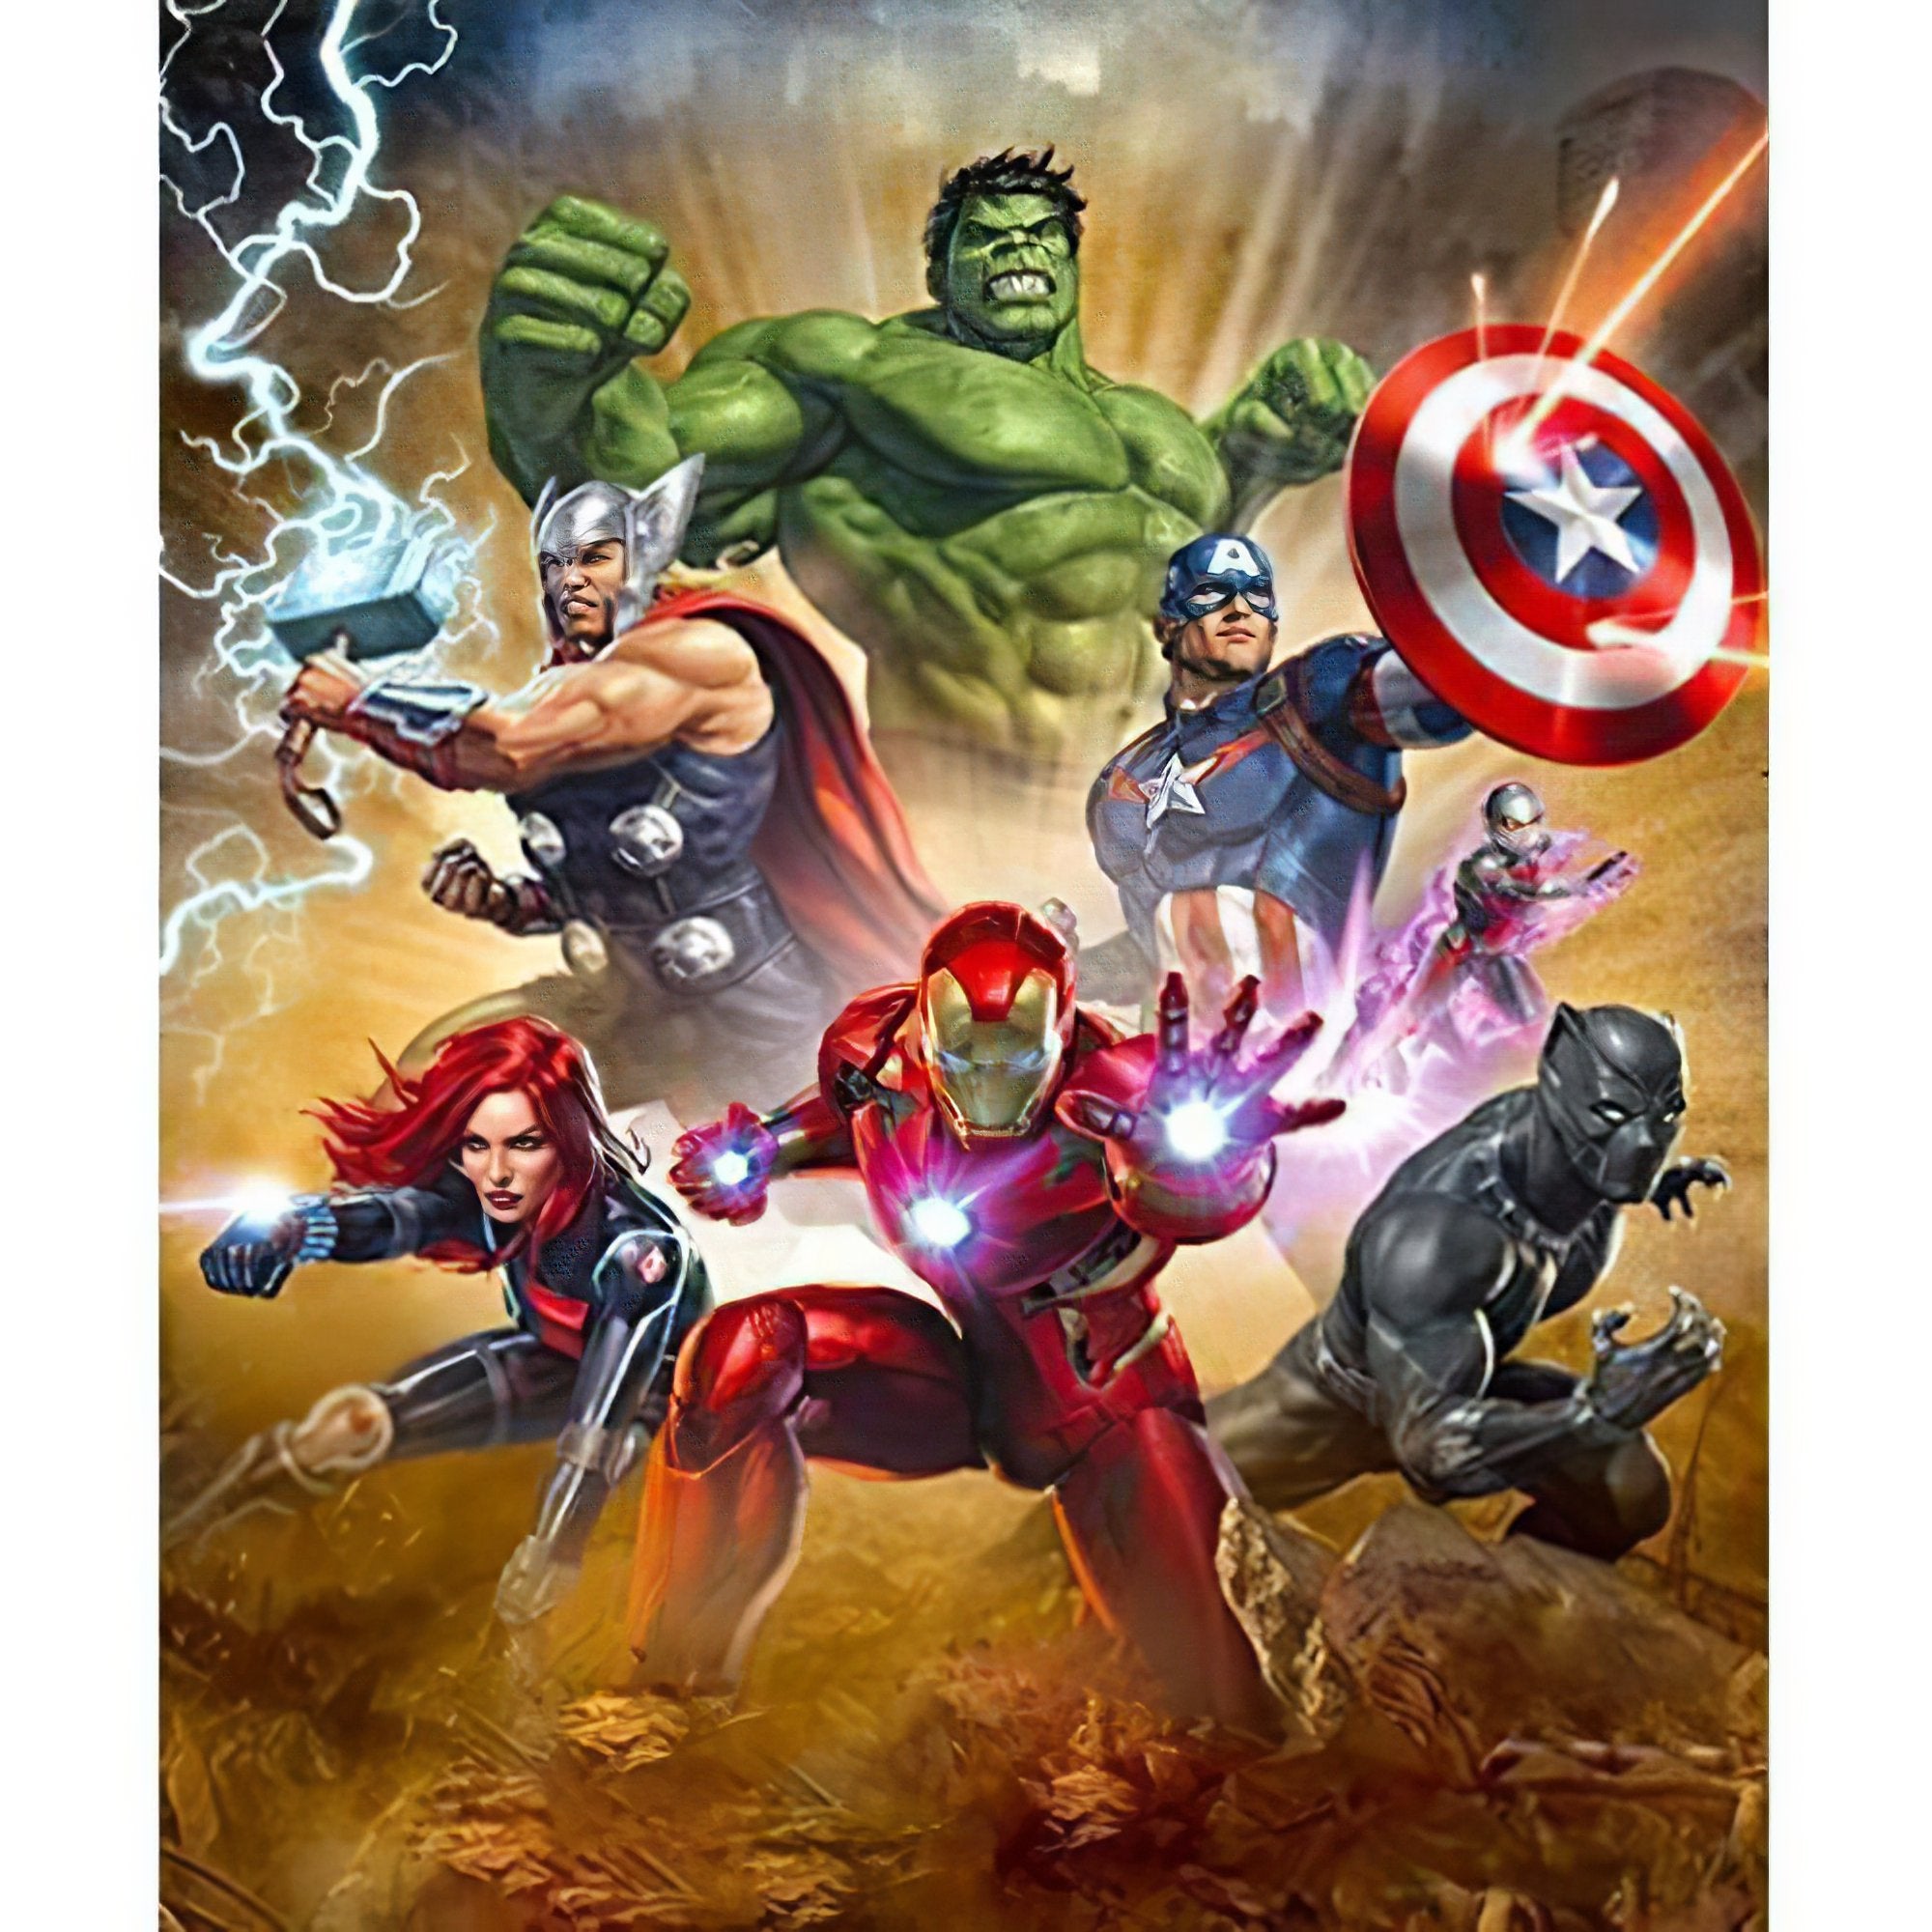 Assemble with the Marvel Avengers in epic artwork.Marvel Avengers - Diamondartlove